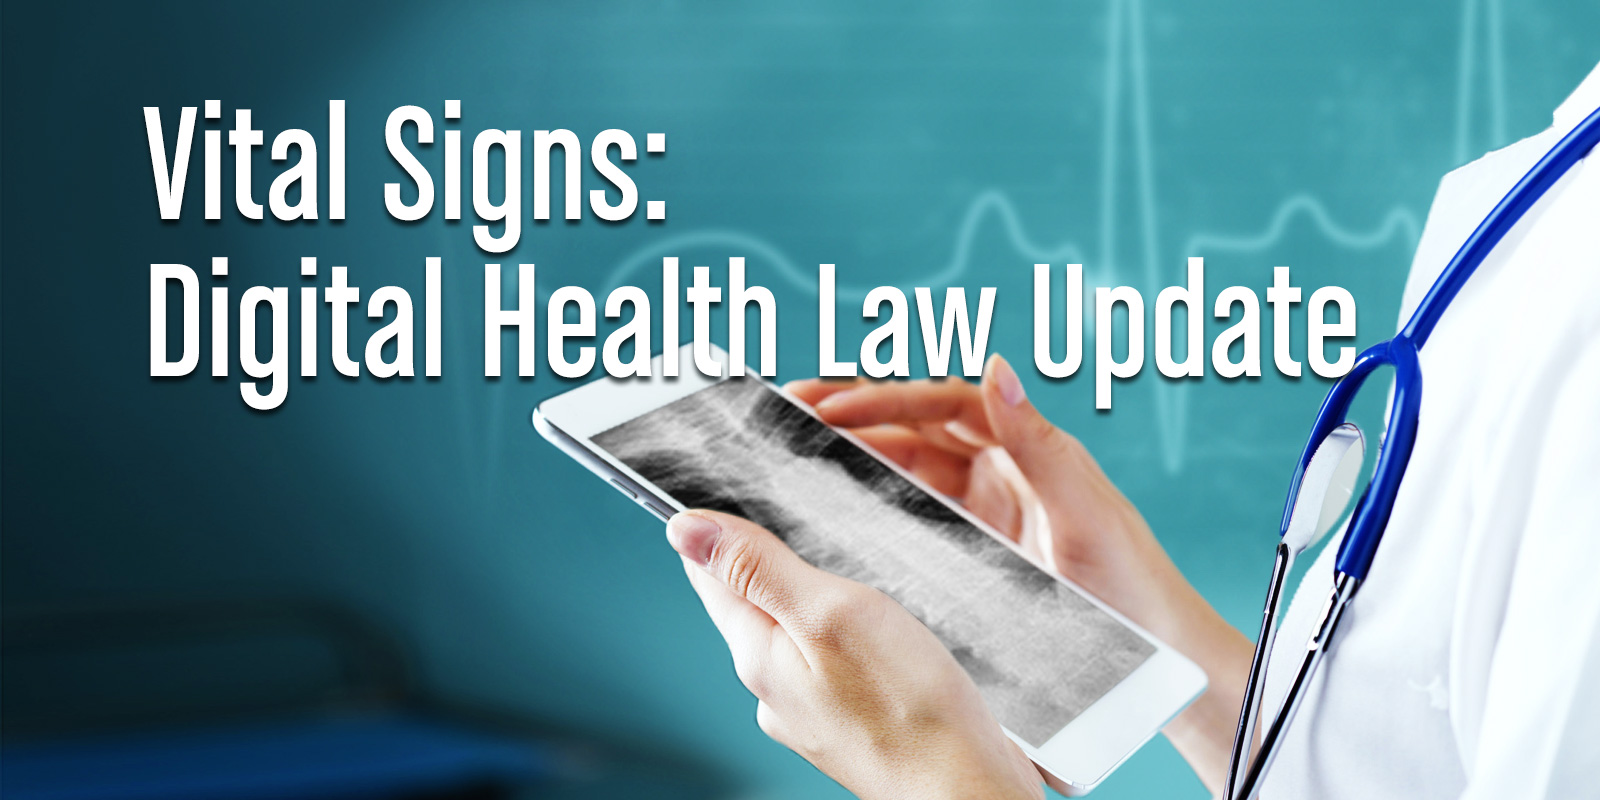 Vital Signs Digital Health Law